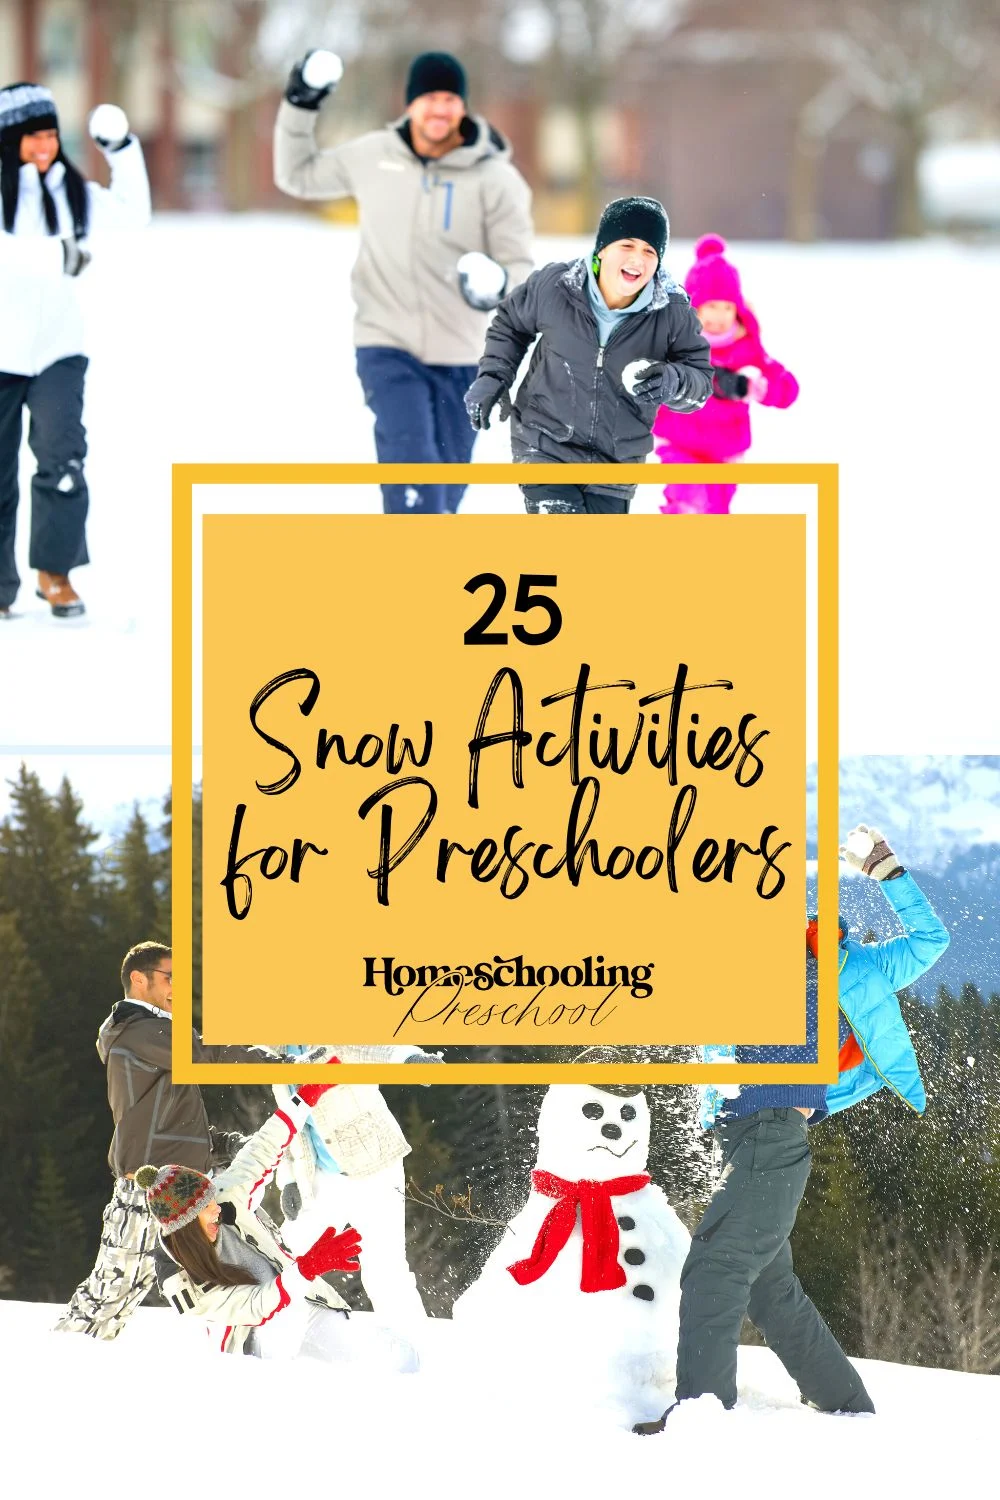 25 Snow Activities for Preschoolers